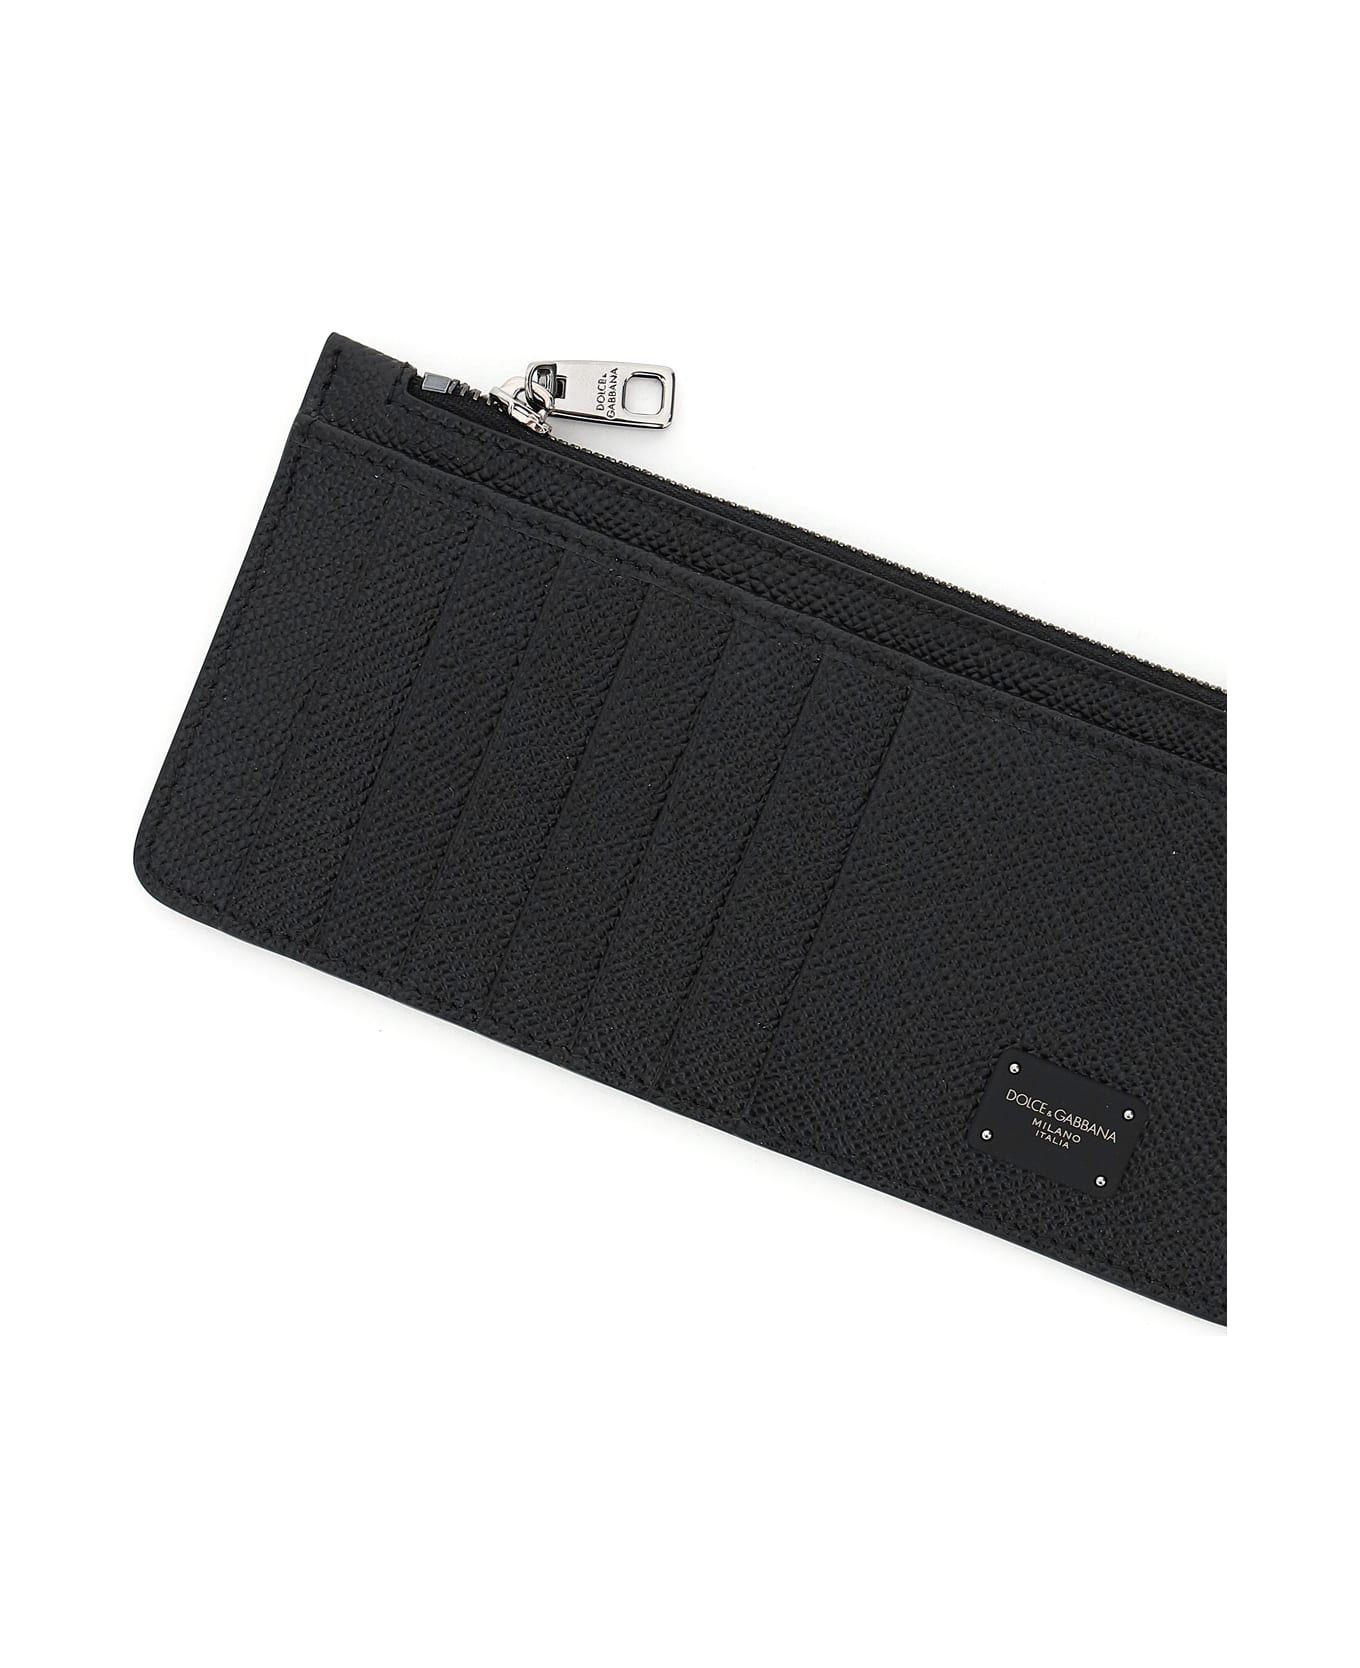 Dolce & Gabbana Credit Card Holder - BLACK (Black)